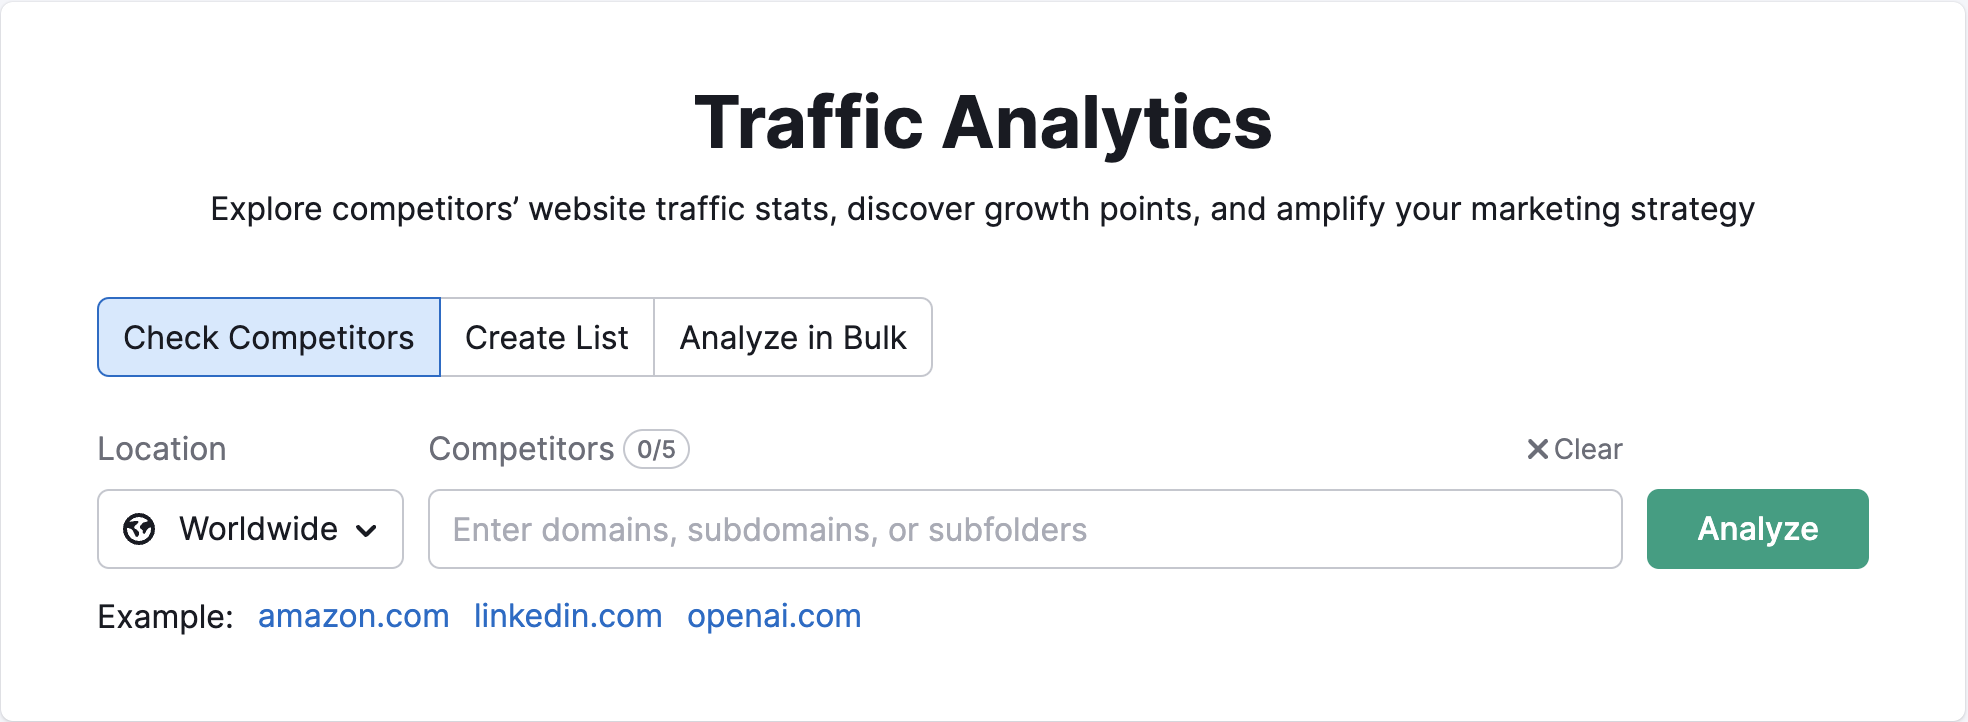 Página de inicio de Traffic Analytics en Semrush. Muestra dónde escribir el dominio del competidor y seleccionar la ubicación. 